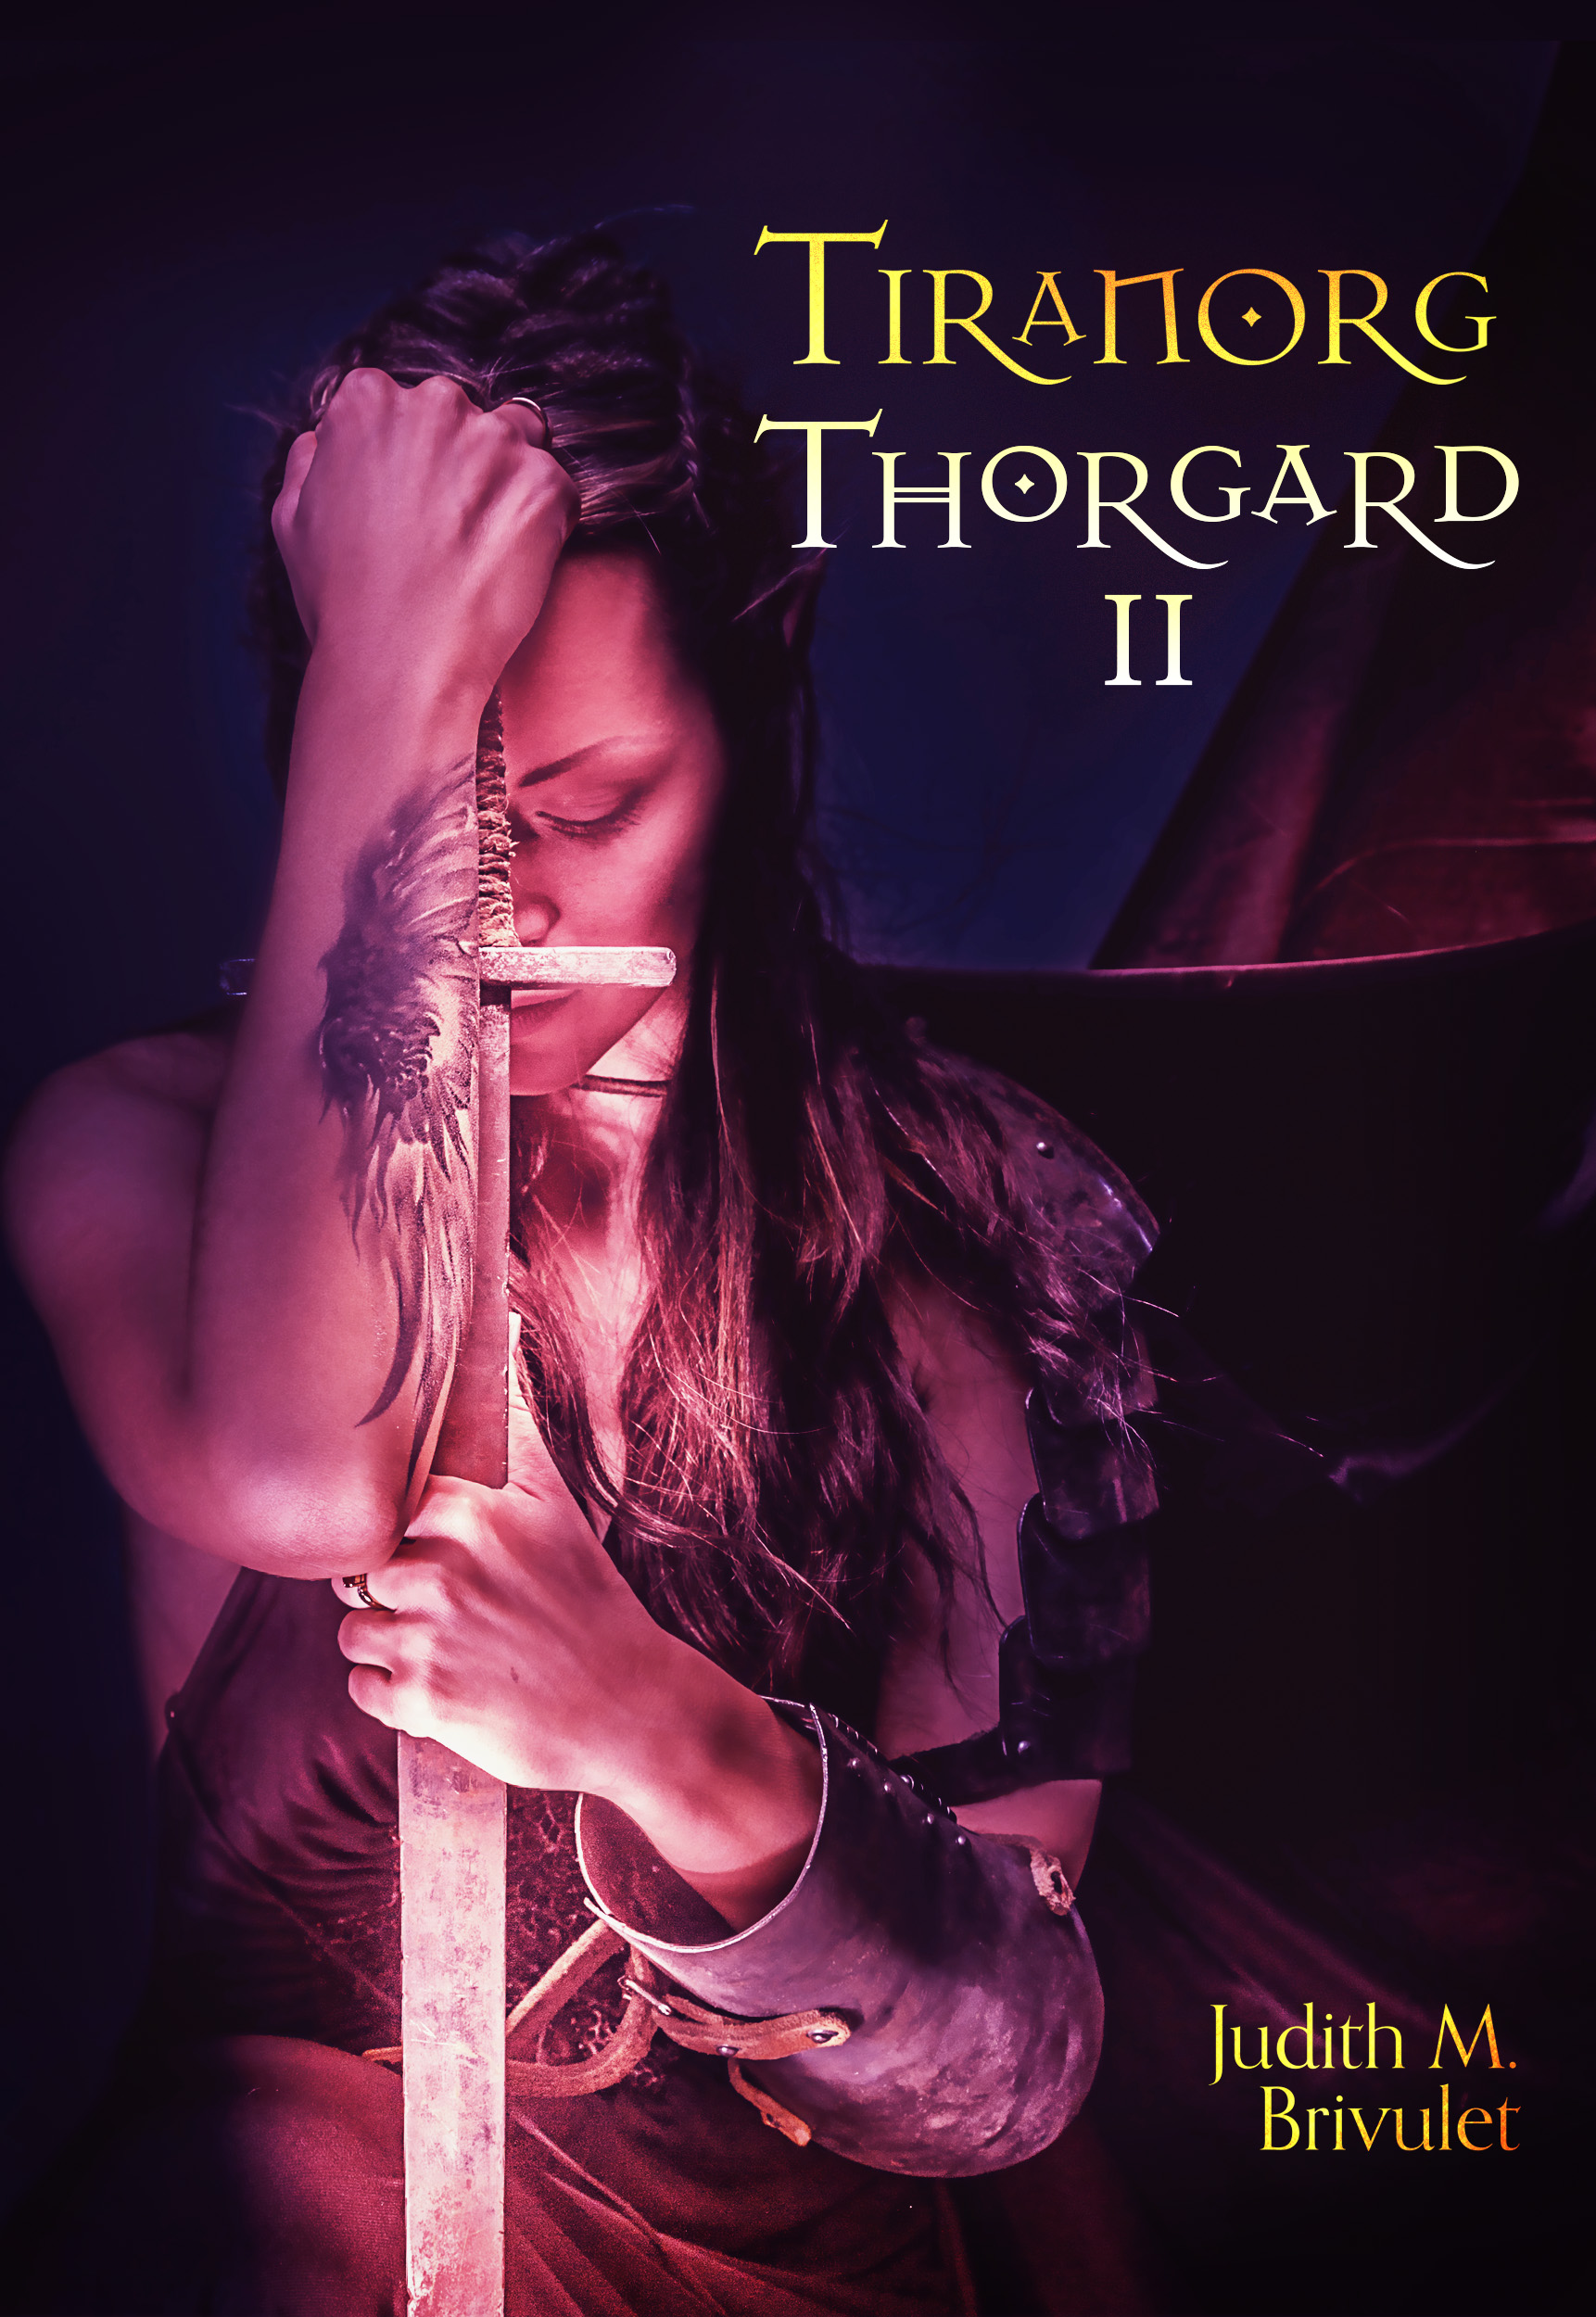 Tiranorg, Thorgard II